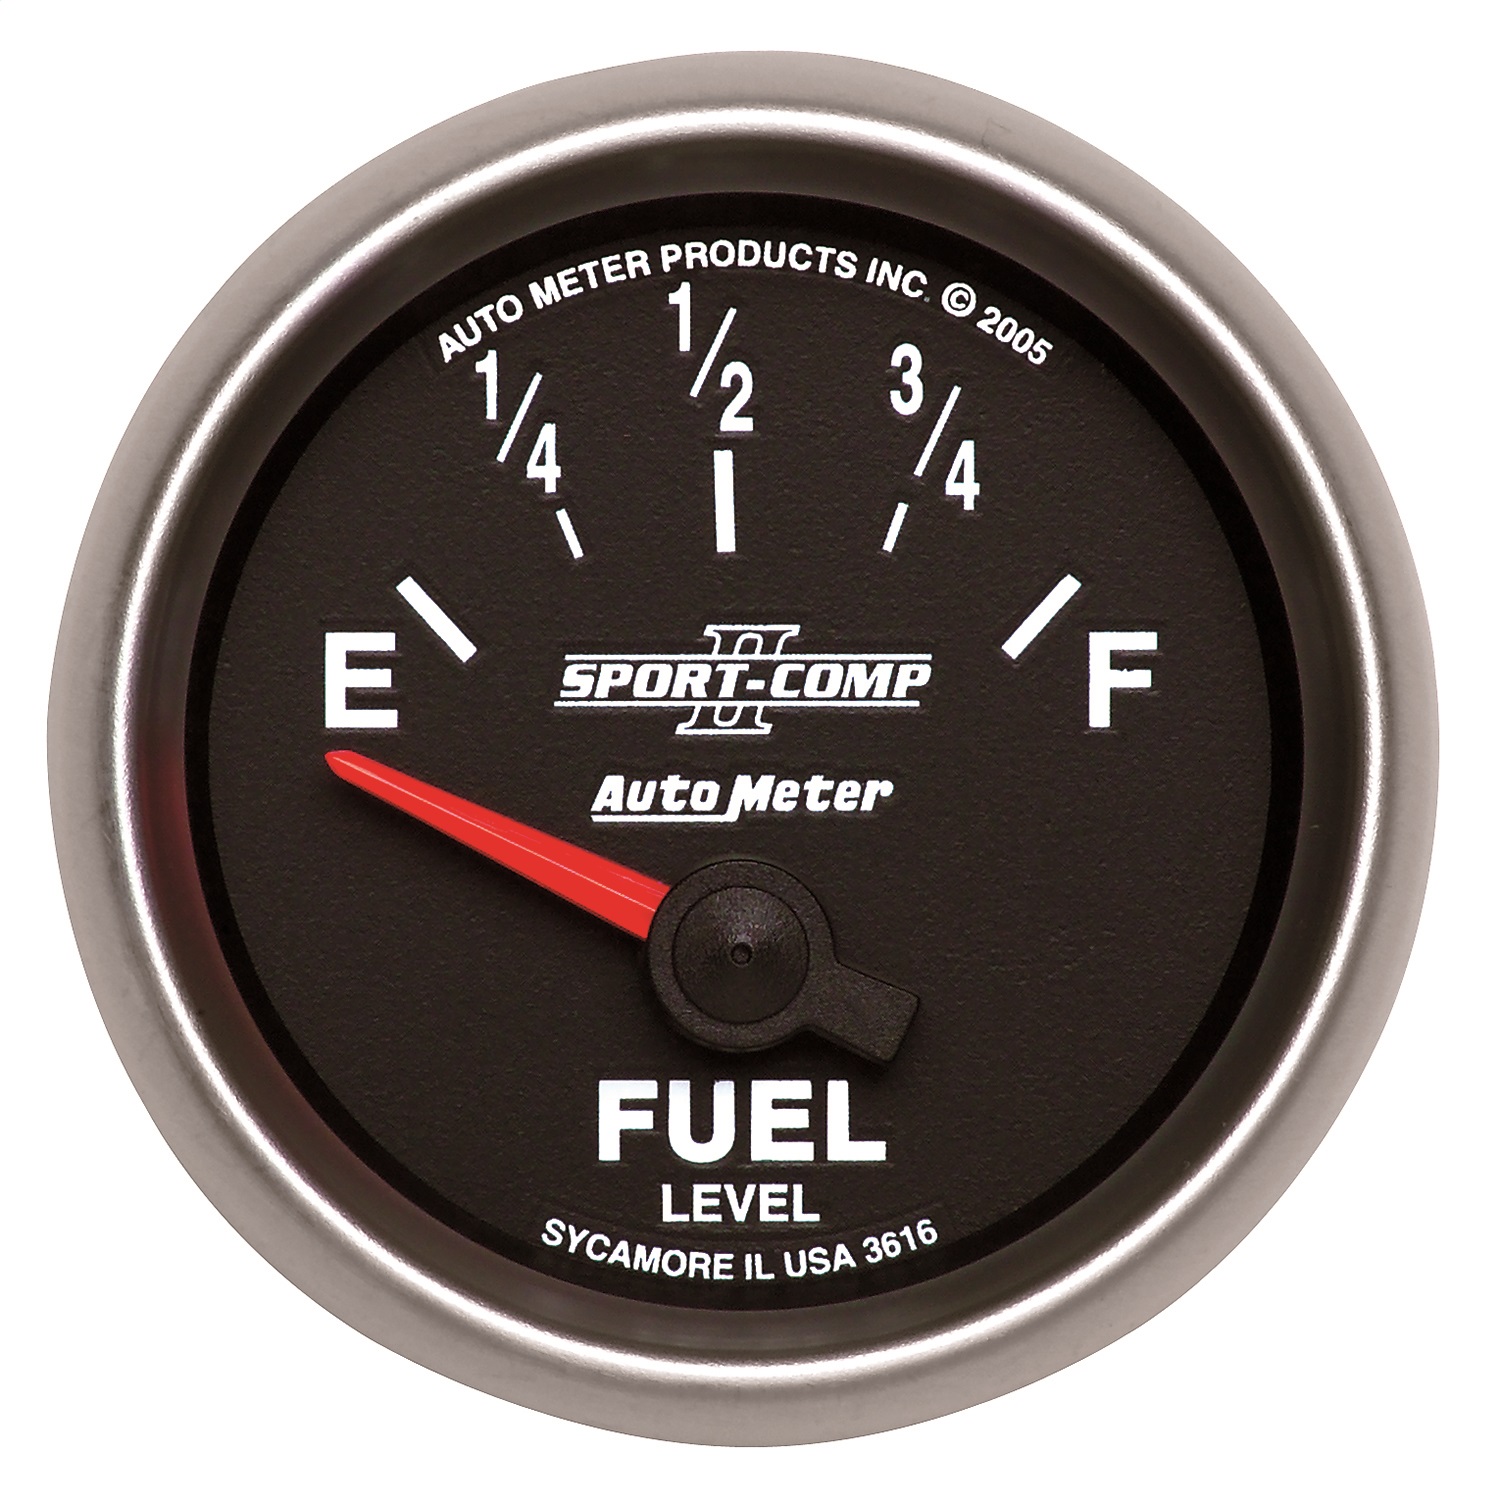 Auto Meter Auto Meter 3616 Sport-Comp II; Electric Fuel Level Gauge